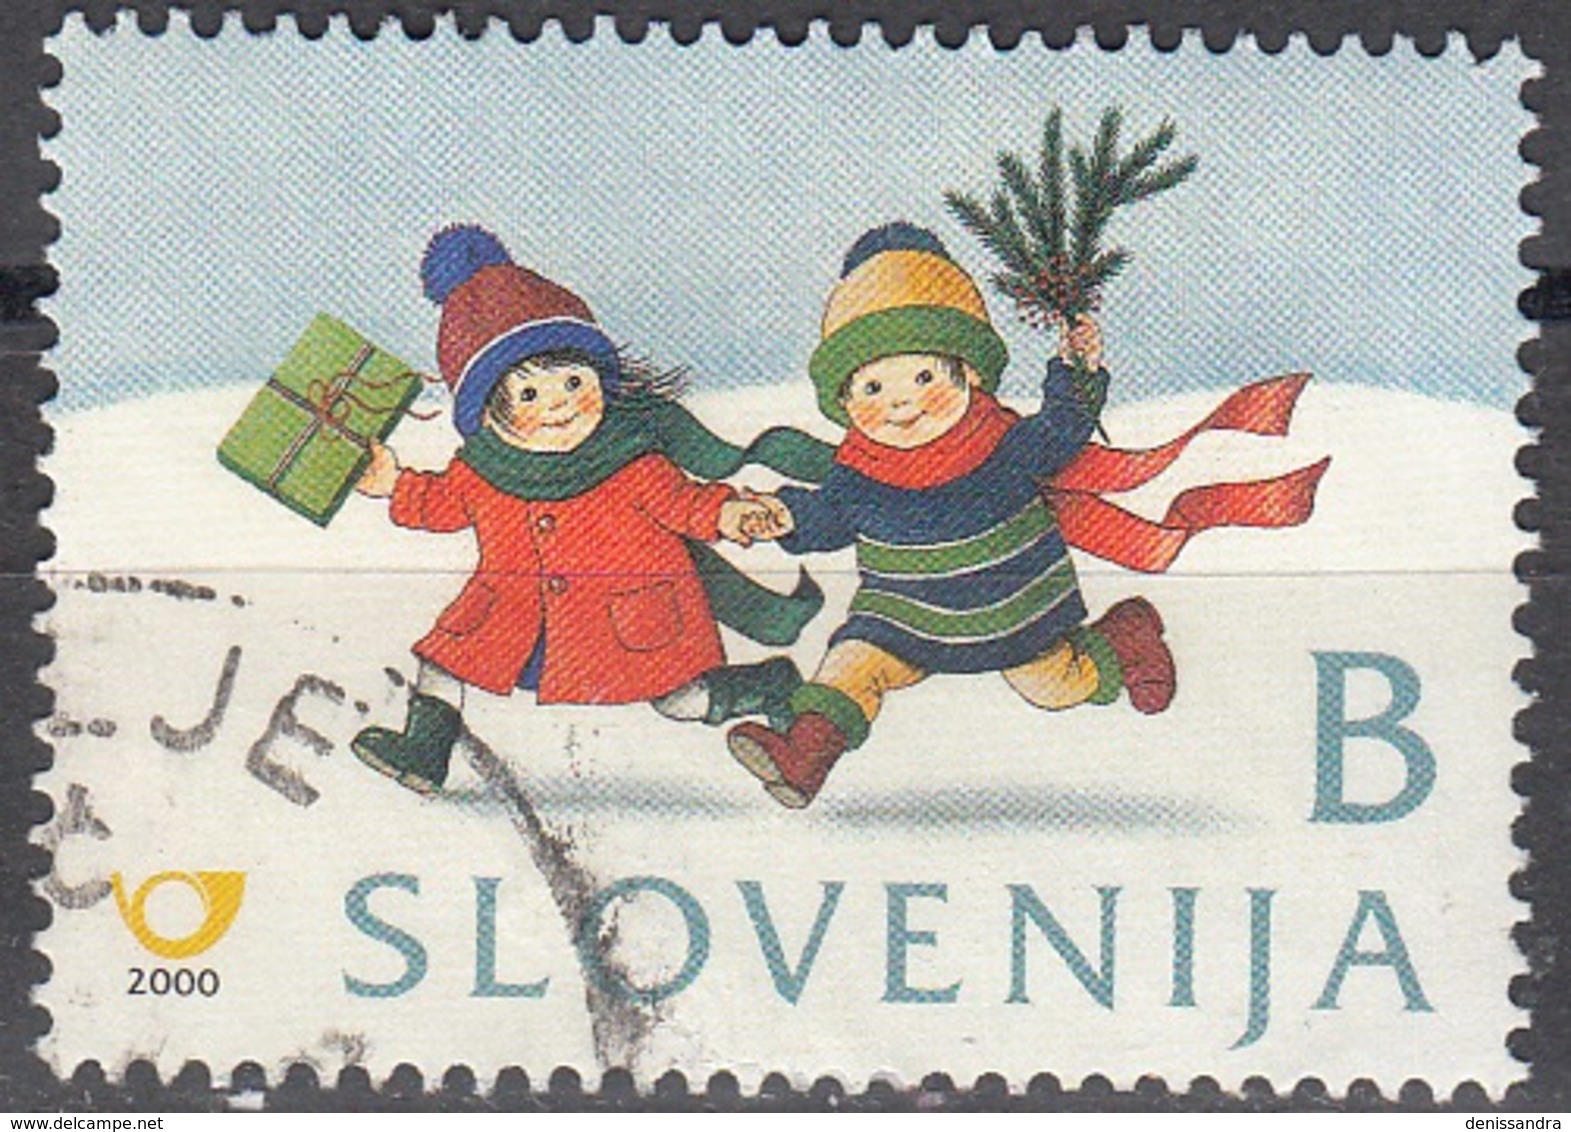 Slovenija 2000 Michel 328 O Cote (2006) 0.30 Euro Noël Enfants Dans La Neige Avec Cadeau Cachet Rond - Slovénie